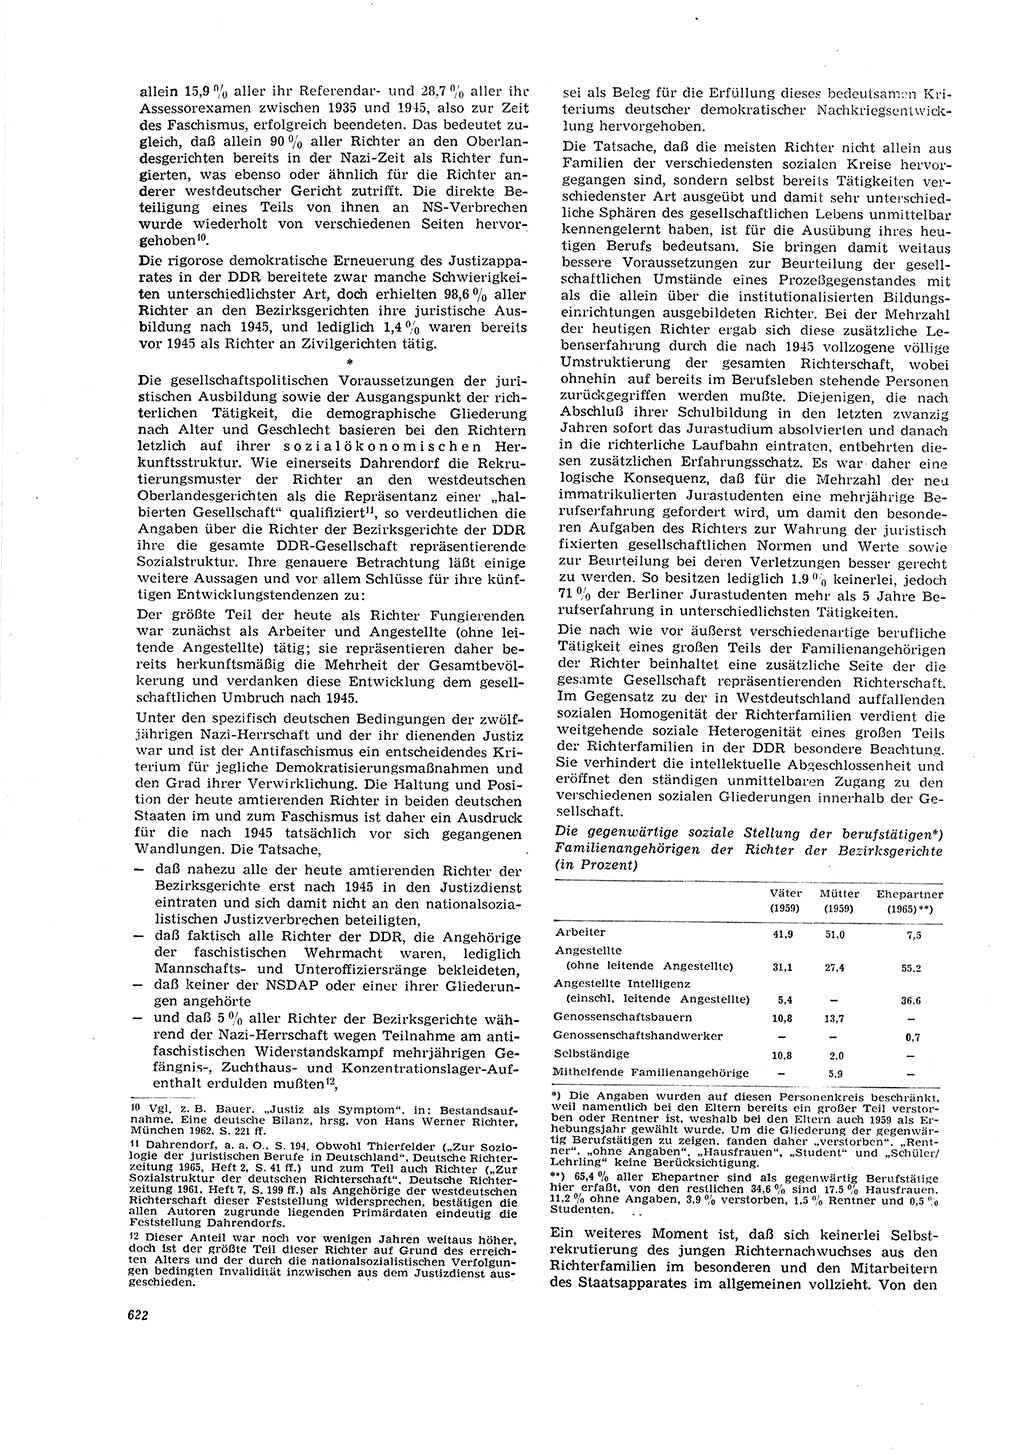 Neue Justiz (NJ), Zeitschrift für Recht und Rechtswissenschaft [Deutsche Demokratische Republik (DDR)], 20. Jahrgang 1966, Seite 622 (NJ DDR 1966, S. 622)